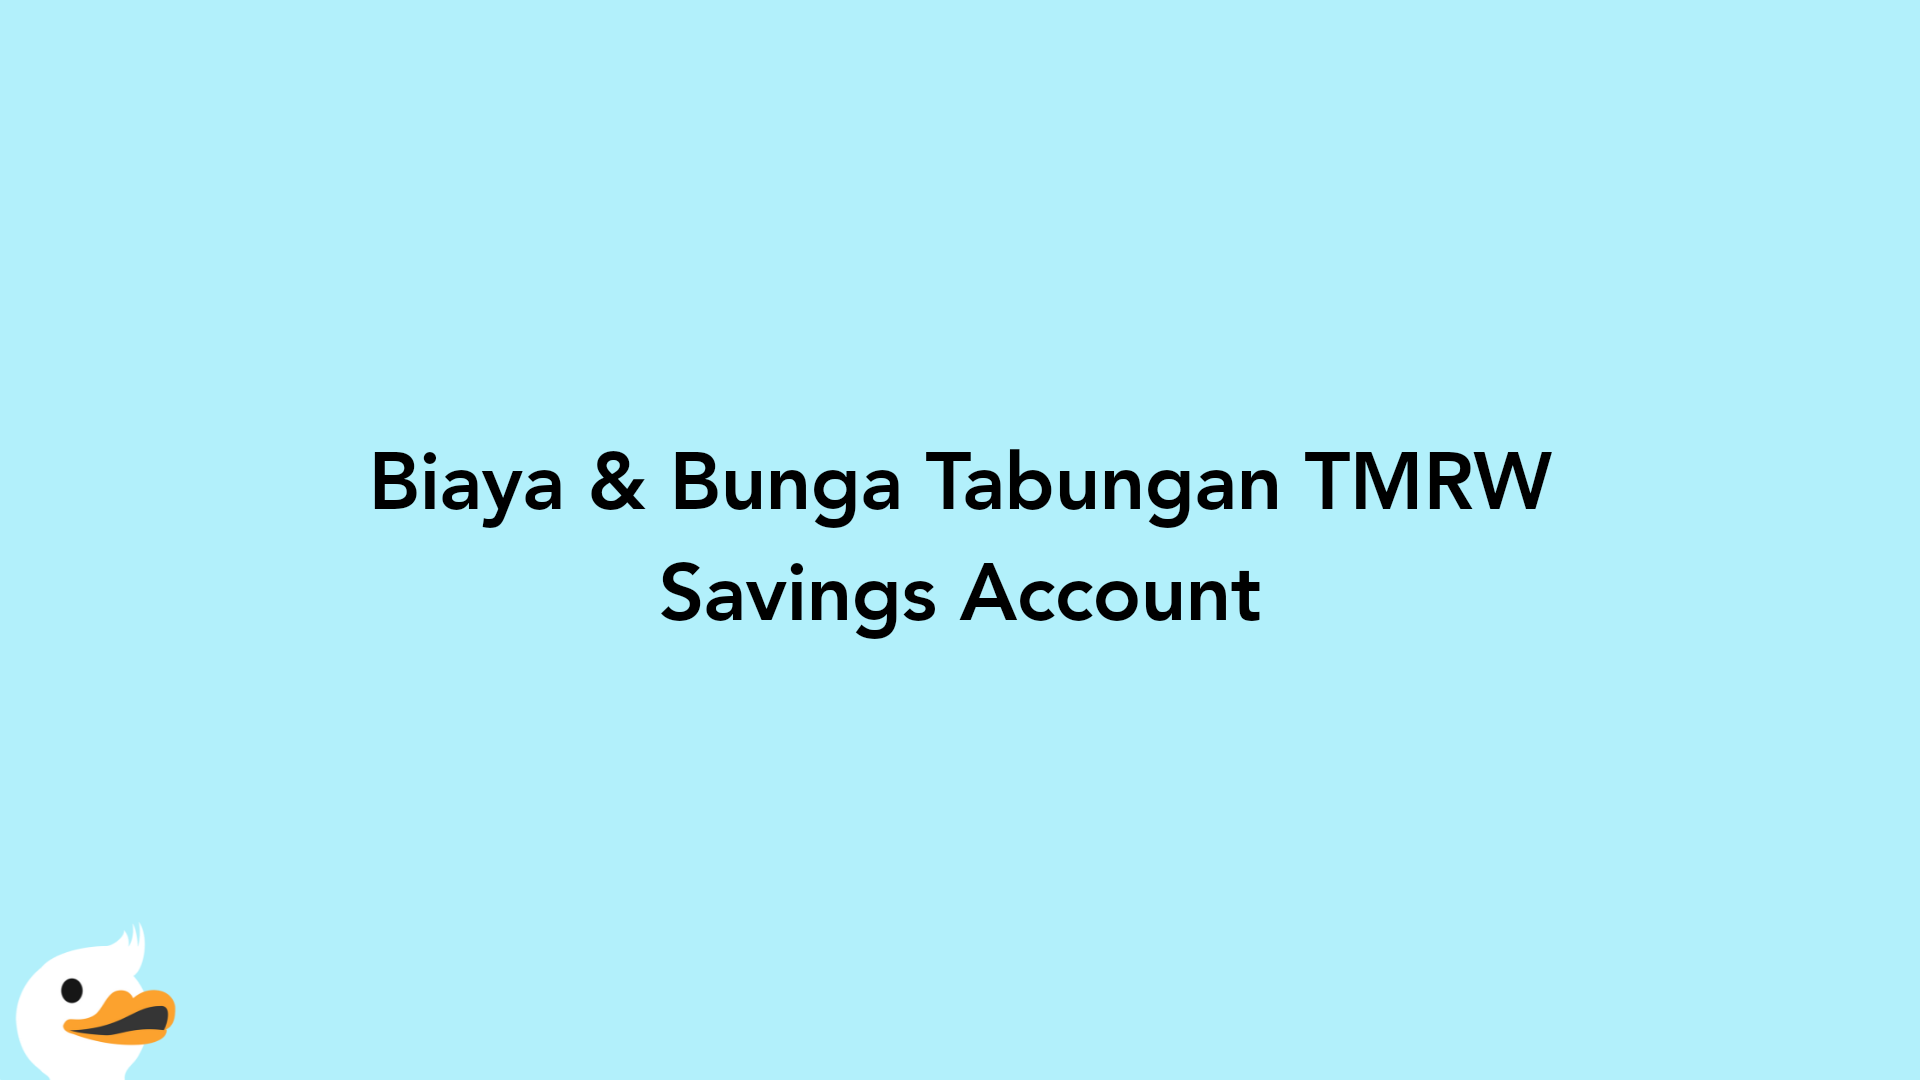 Biaya & Bunga Tabungan TMRW Savings Account